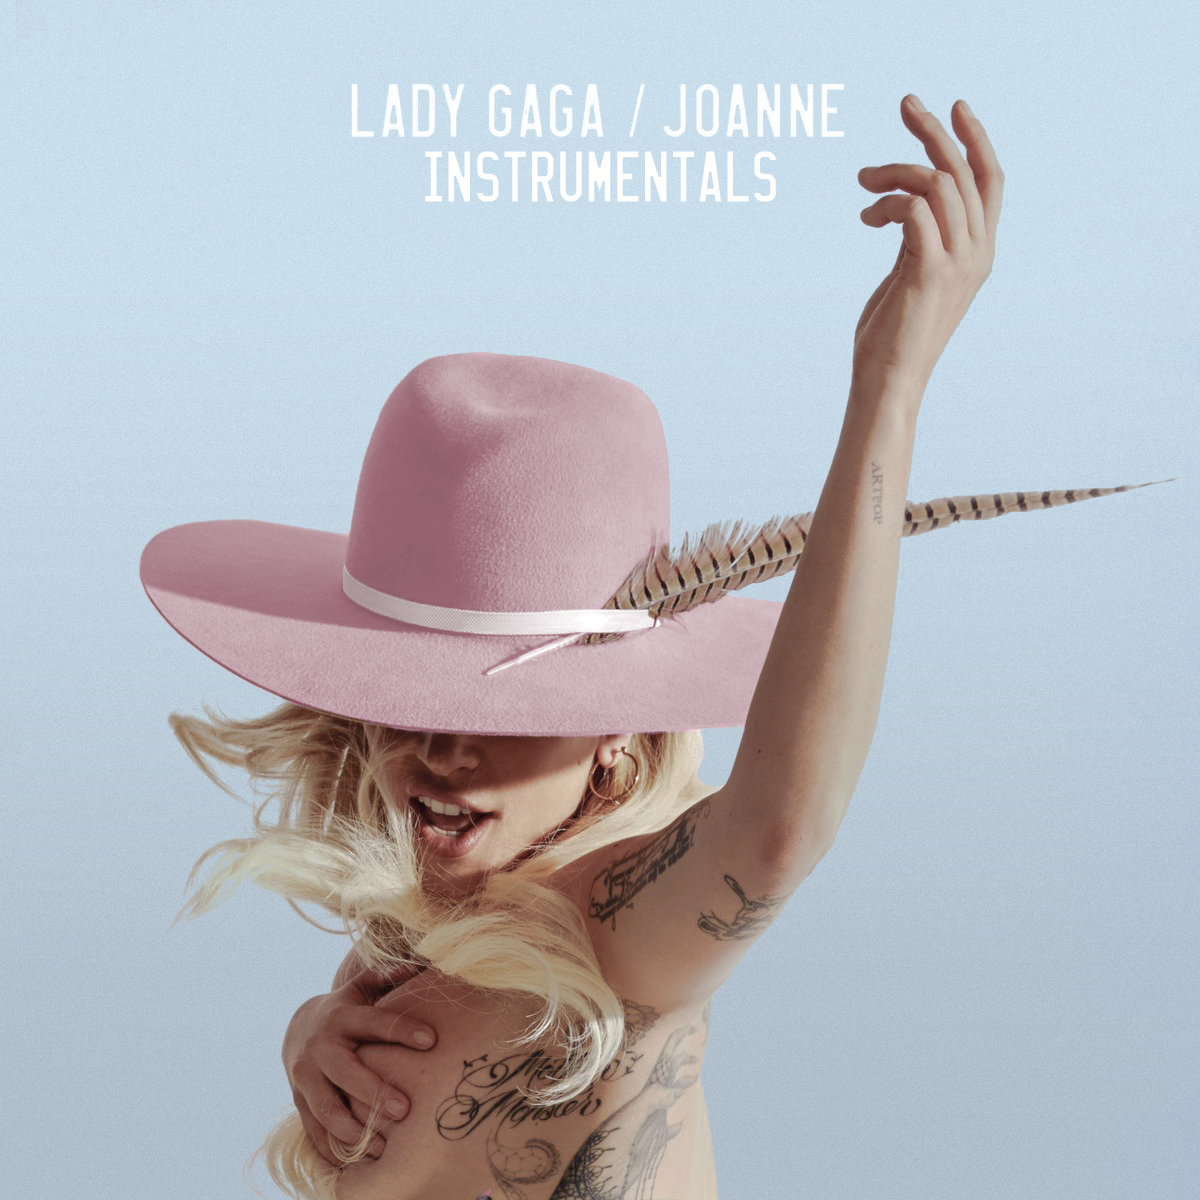 Joanne - Instrumentals 